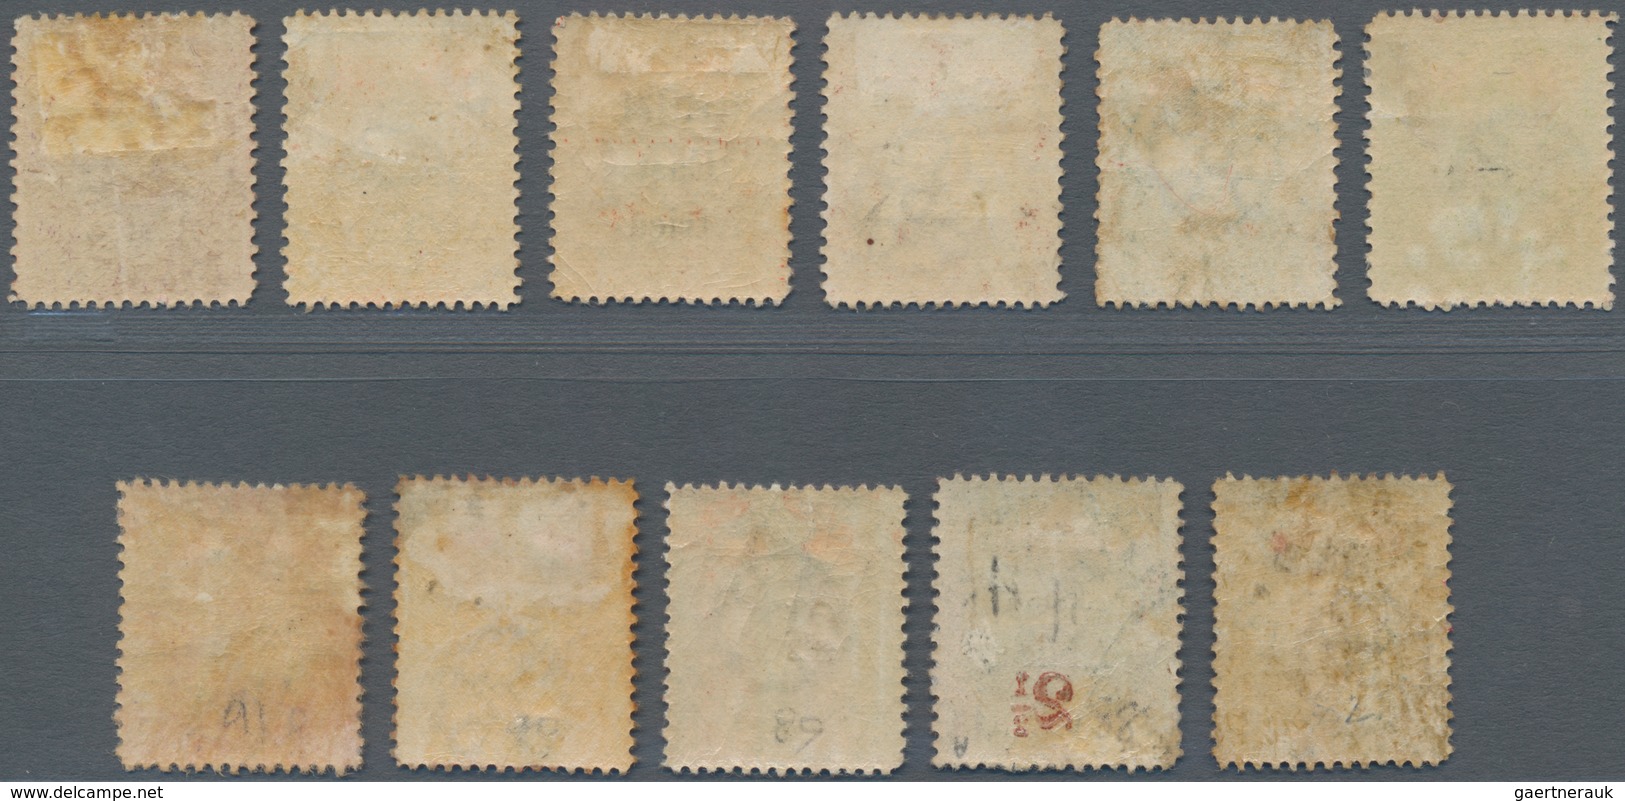 Britisch-Ostafrika Und Uganda: 1897 Stamps Of Zanzibar Optd. "British/East/Africa", With Set Of Six - Protectoraten Van Oost-Afrika En Van Oeganda